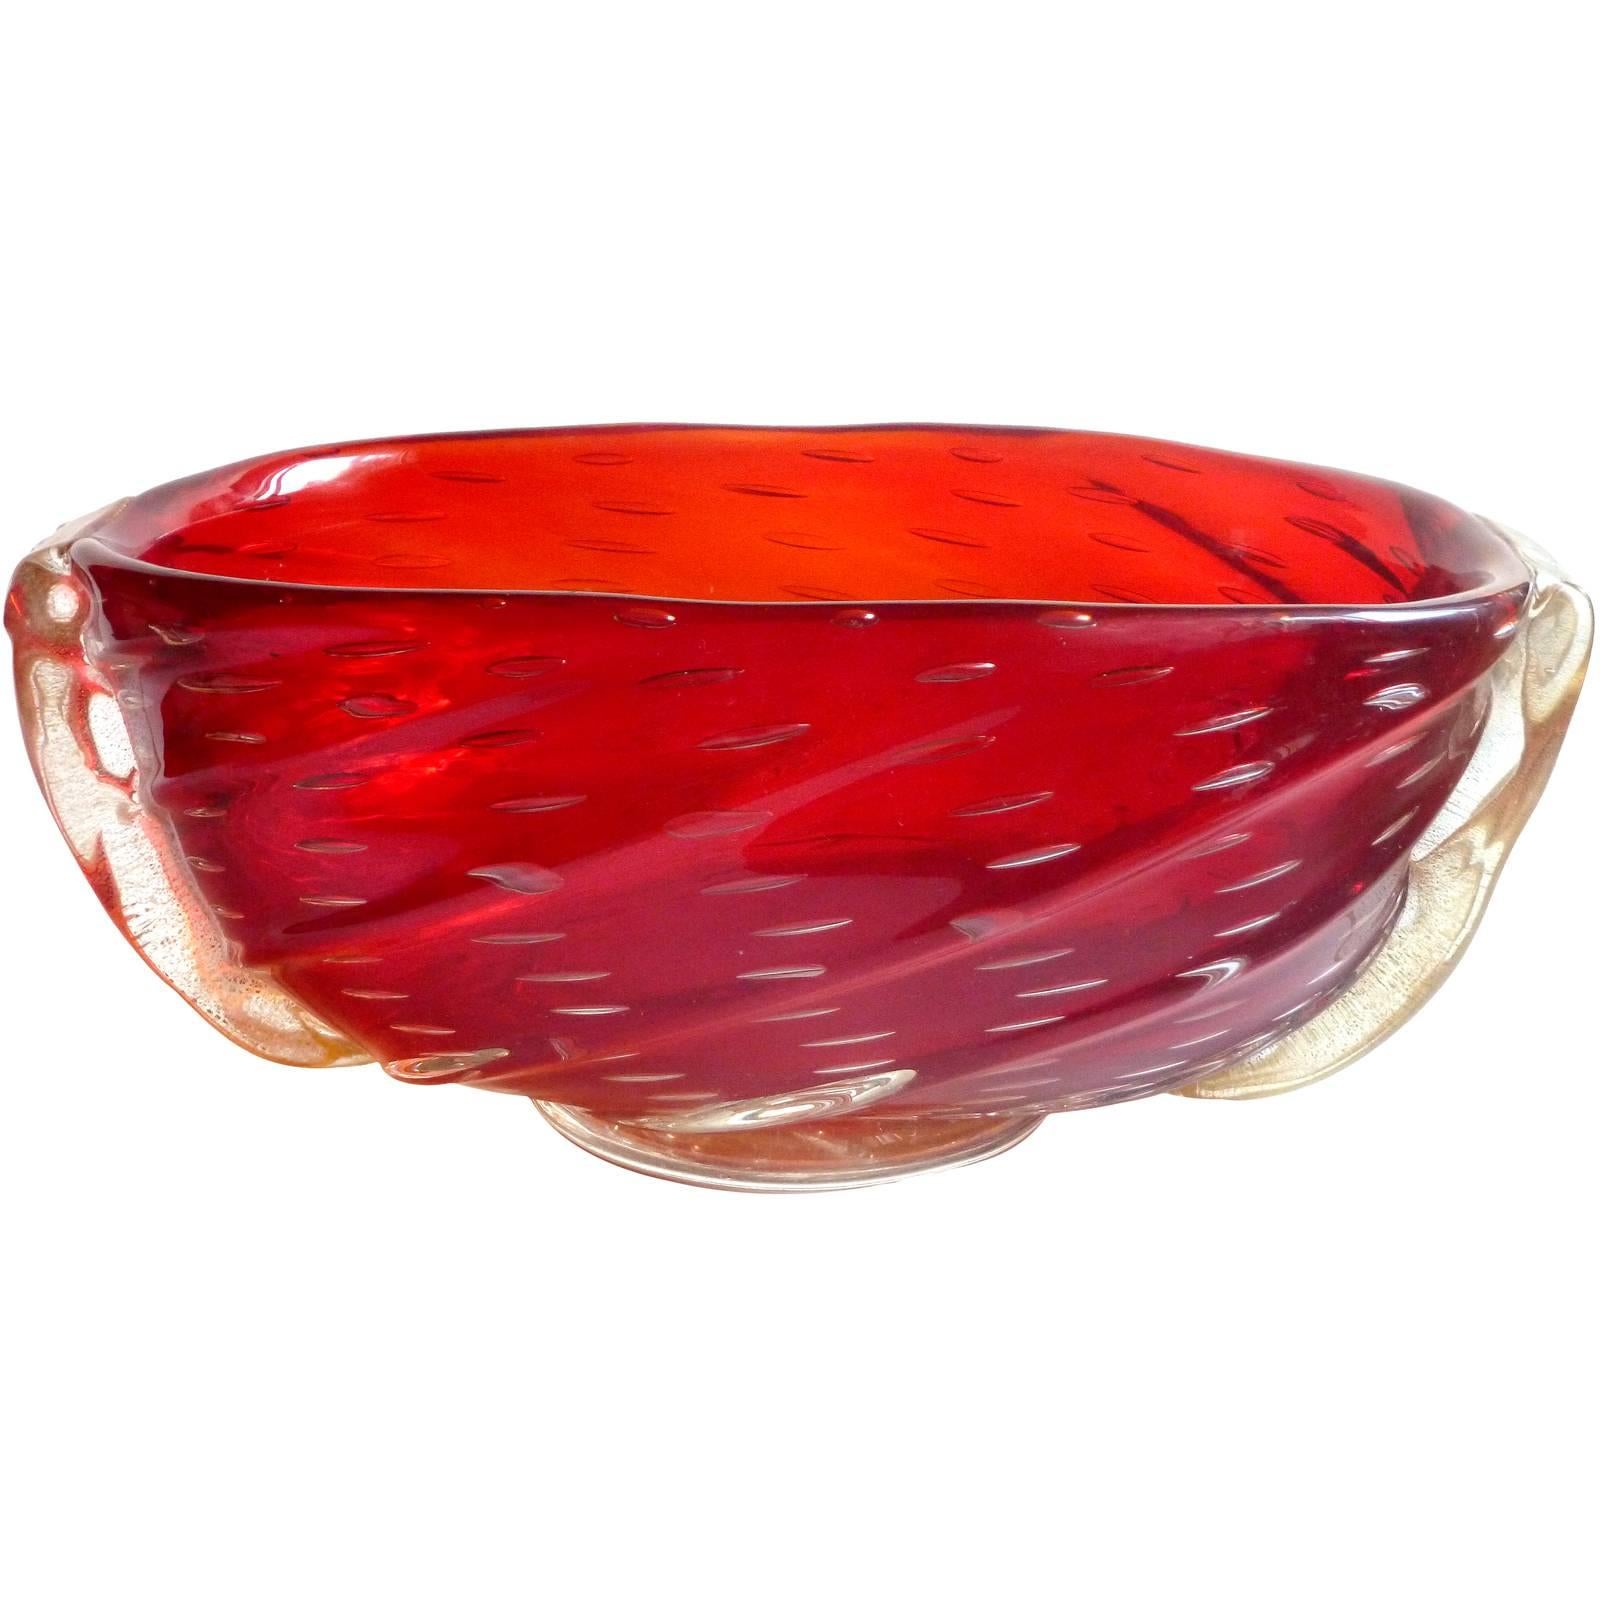 Barovier Toso Murano Red Orange Amberina Gold Italian Art Glass Bowl